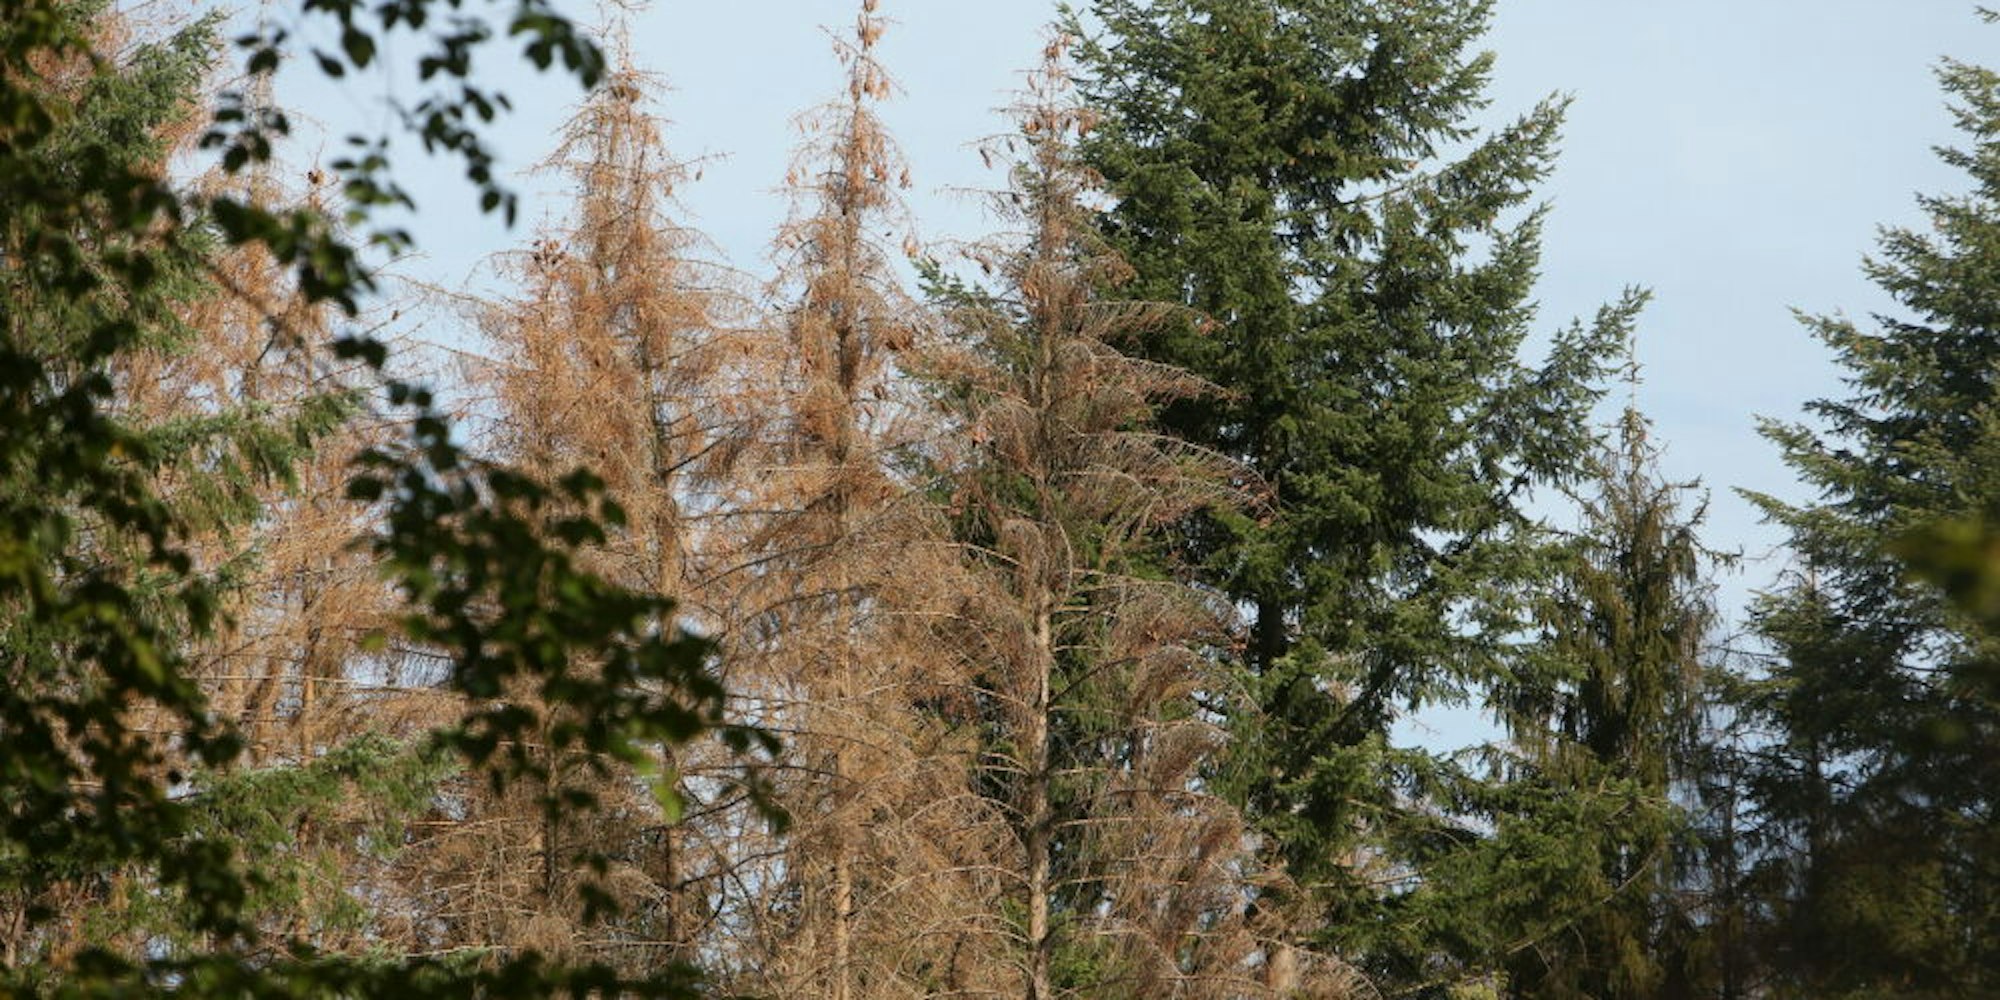 Mit dem Harvester werden im Stadtwald von Bad Honnef großflächig Fichten gefällt, die vom Borkenkäfer befallen sind, wie Forstwirt Martin Siemes erläuterte. Unter anderem an den braunen Nadeln sind die geschädigten Bäume zu erkennen.